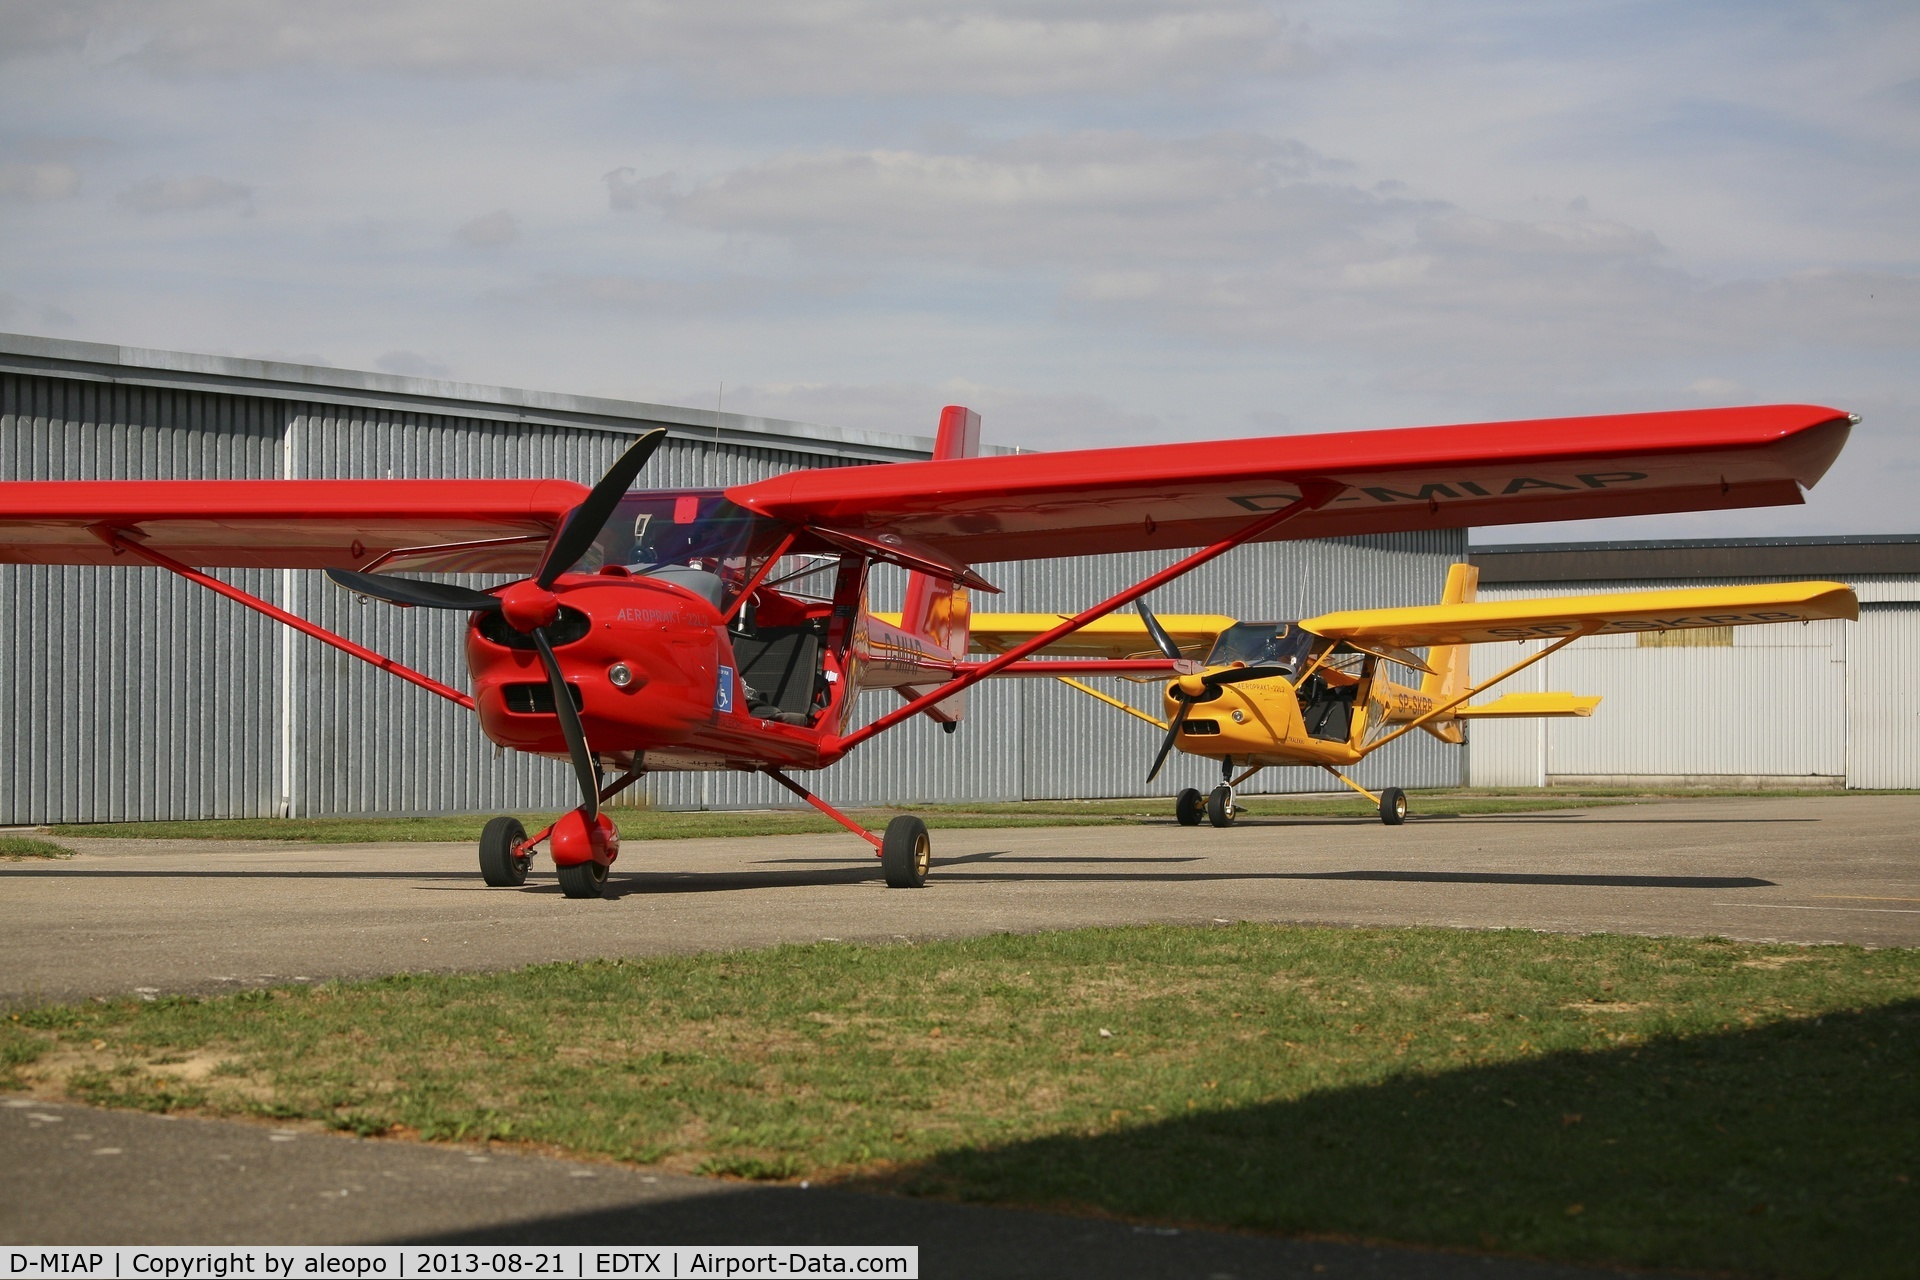 D-MIAP, 2013 Aeroprakt A-22L2 Foxbat C/N 432, the red one: A-22L2 D-MIAP
the yellow one: A-22L2 SP-SKRB